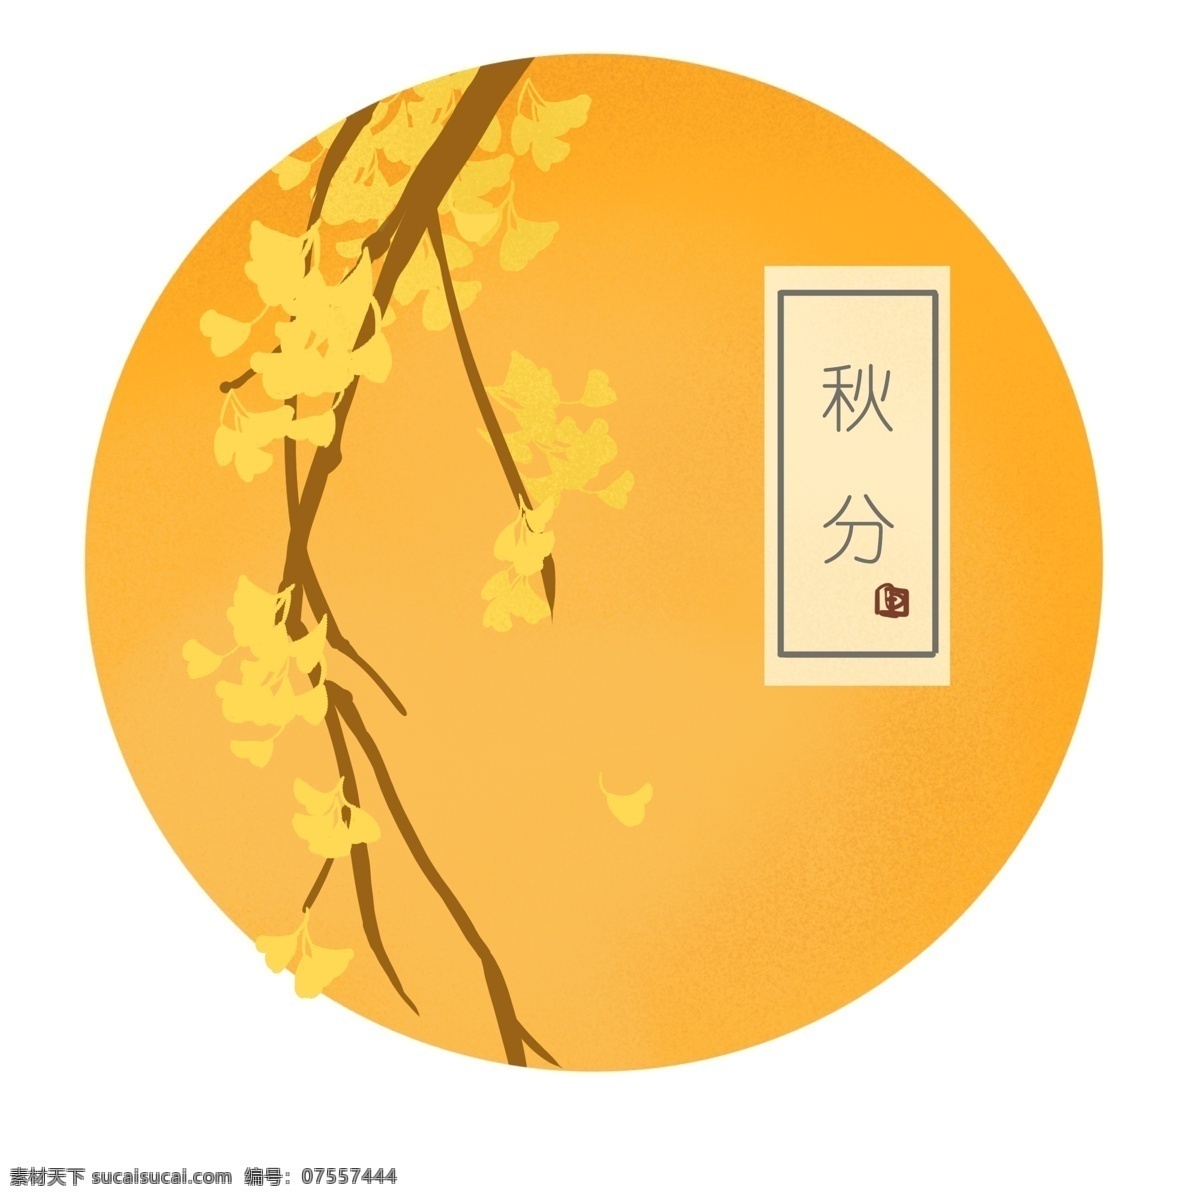 二十四节气 之秋 分 商用 元素 传统 金色 秋天 清新 中国风 秋分 节气 复古 头像